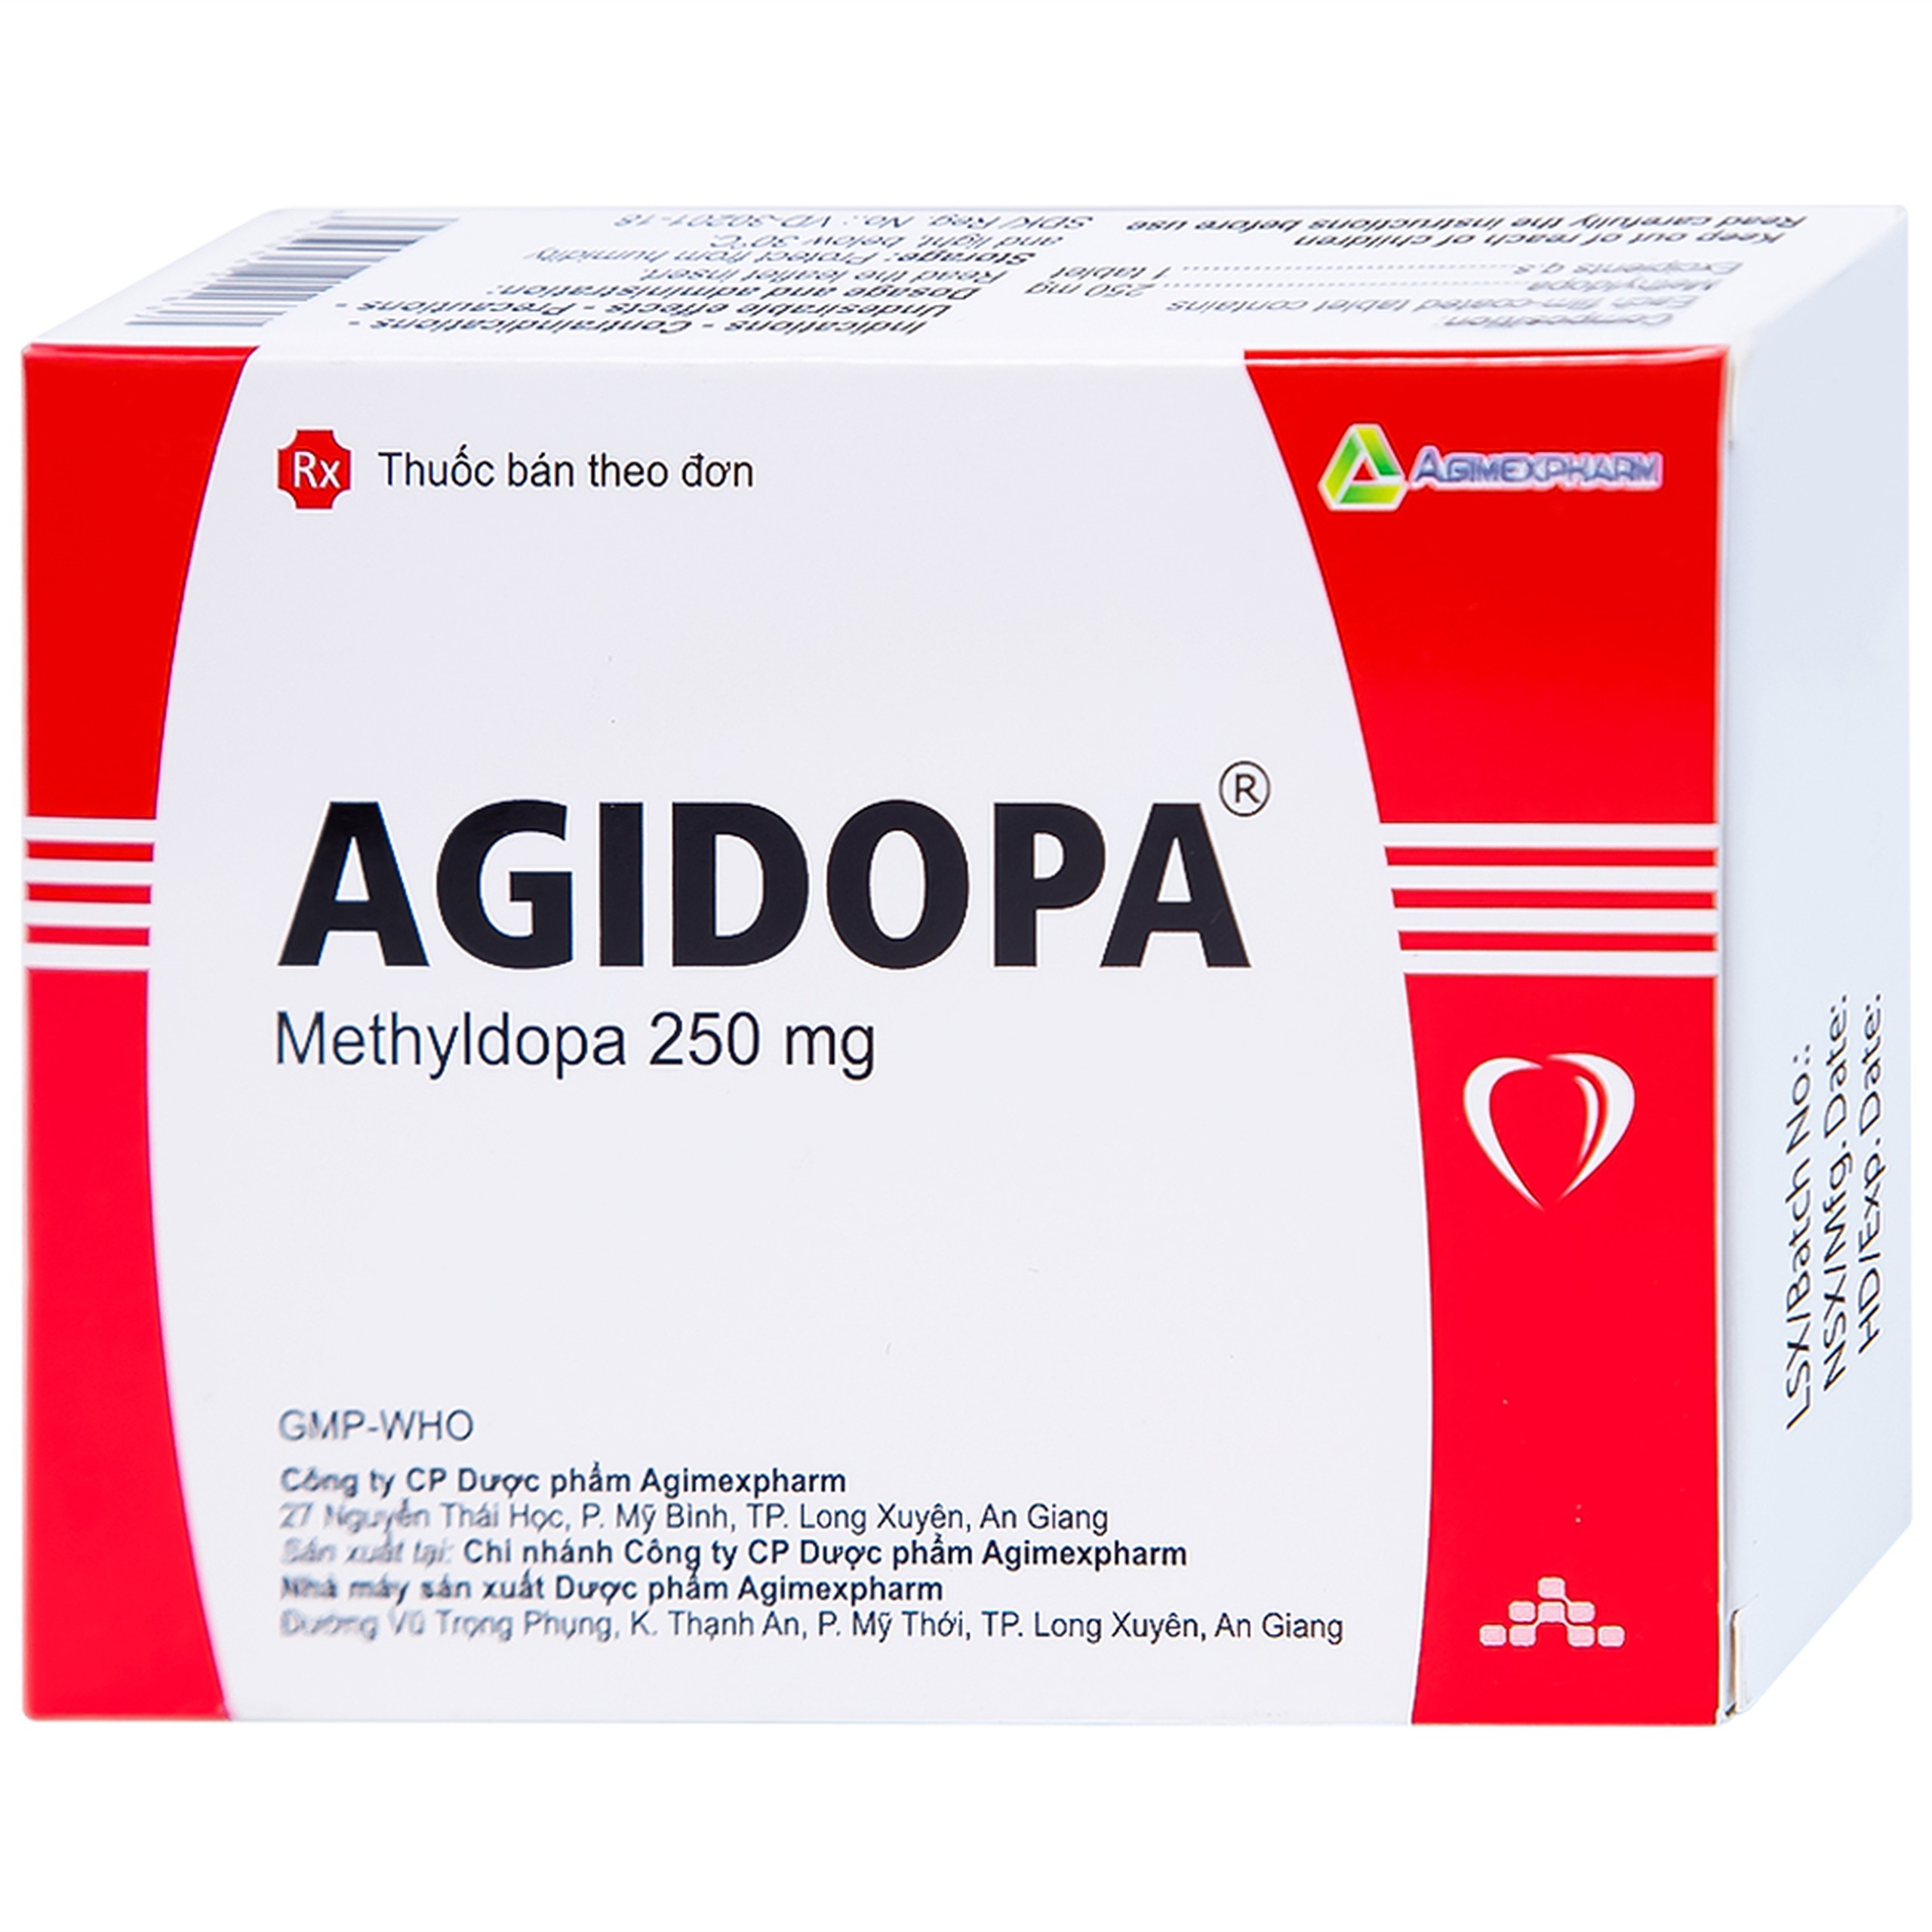 Thuốc Agidopa Agimexpharm điều trị tăng huyết áp (2 vỉ x 10 viên)